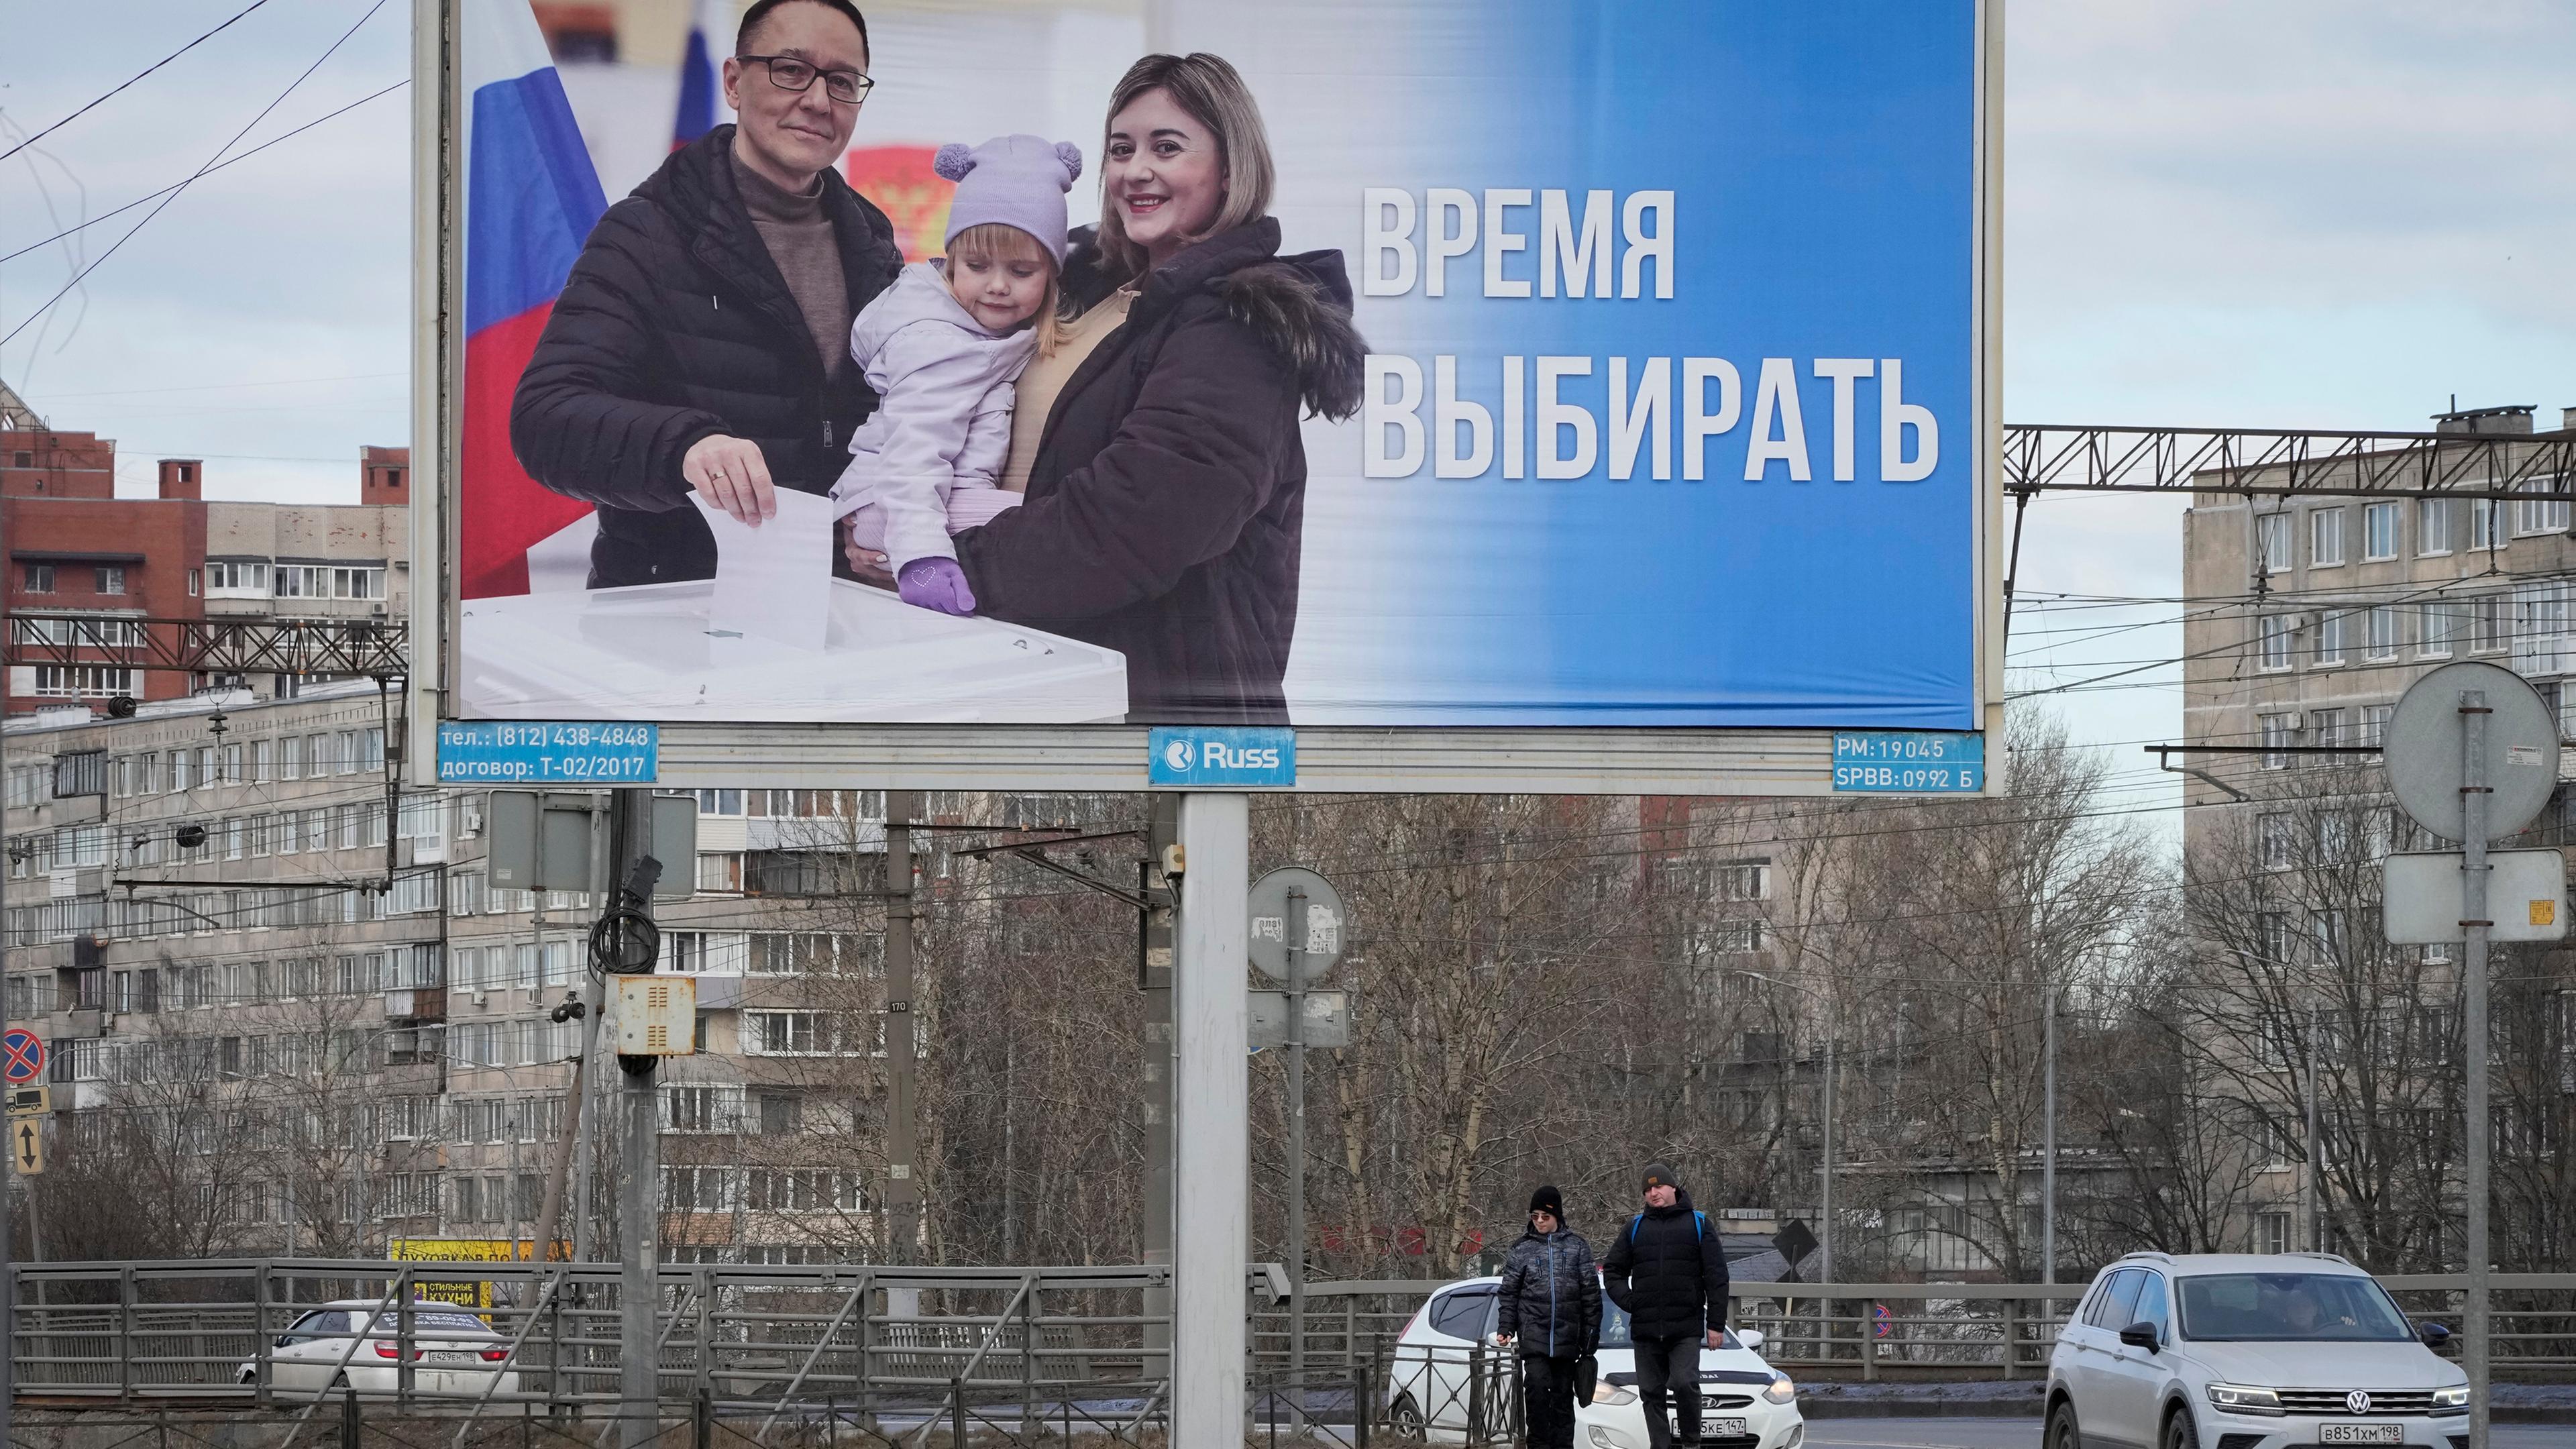 Russland, St. Petersburg: Menschen gehen an einem Plakat vorbei, das für die bevorstehenden Präsidentschaftswahlen wirbt und auf dem auf Russisch steht: "Zeit zu wählen".